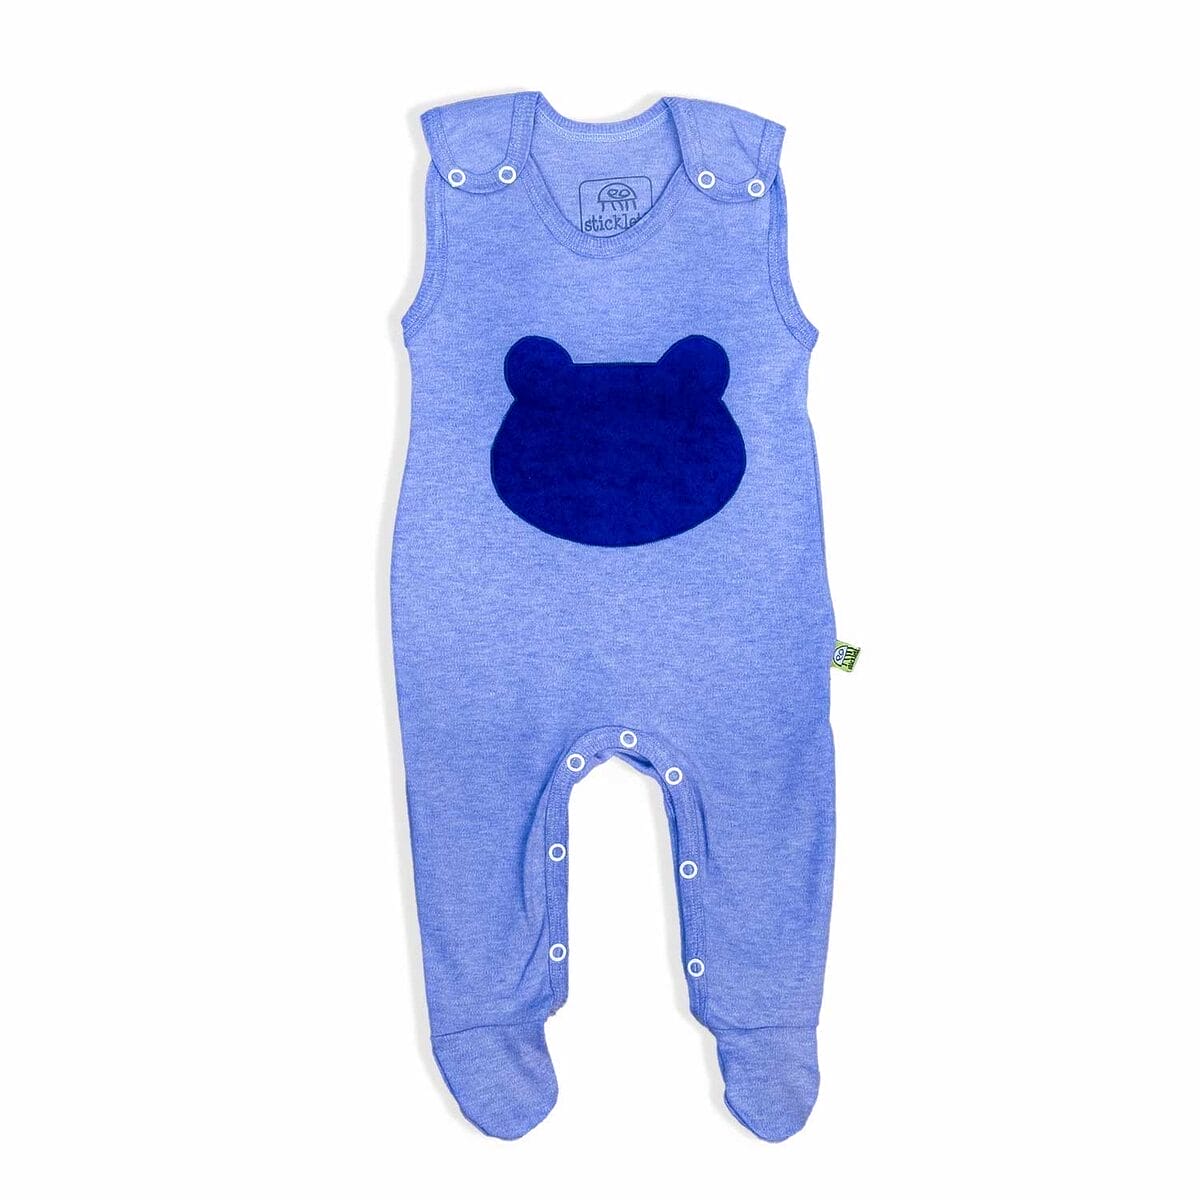 Hellblauer Babystrampler aus Bio-Baumwolle mit praktischer Wickelöffnung und mitwachsenden Füßchen für Komfort und Langlebigkeit.